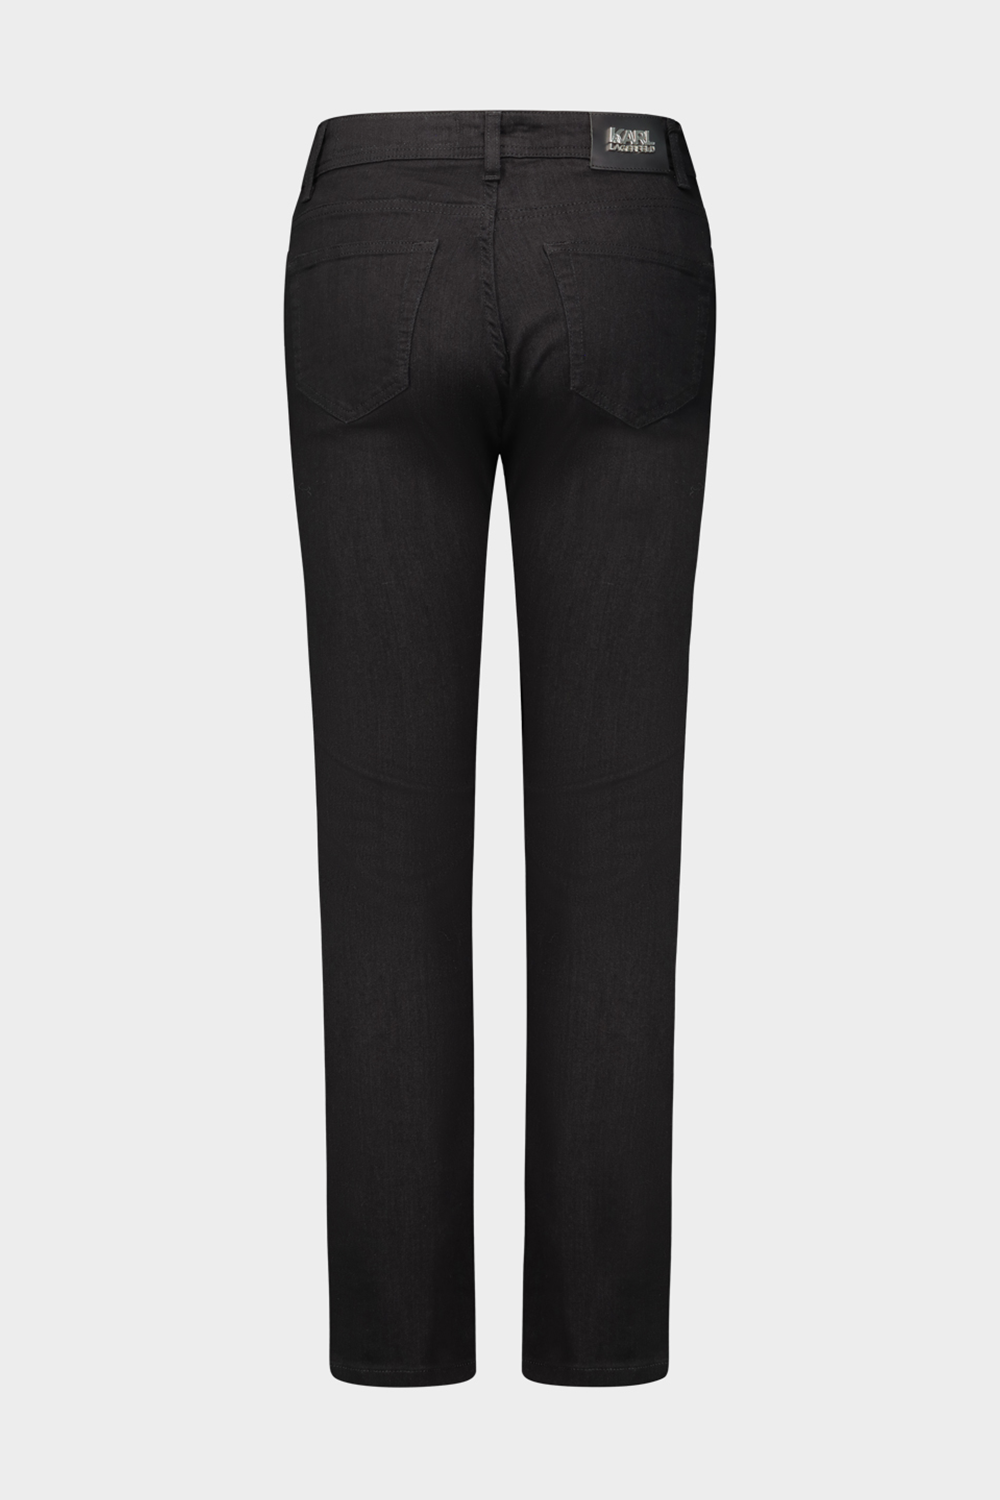 מכנסי ג'ינס לגברים בצבע שחור